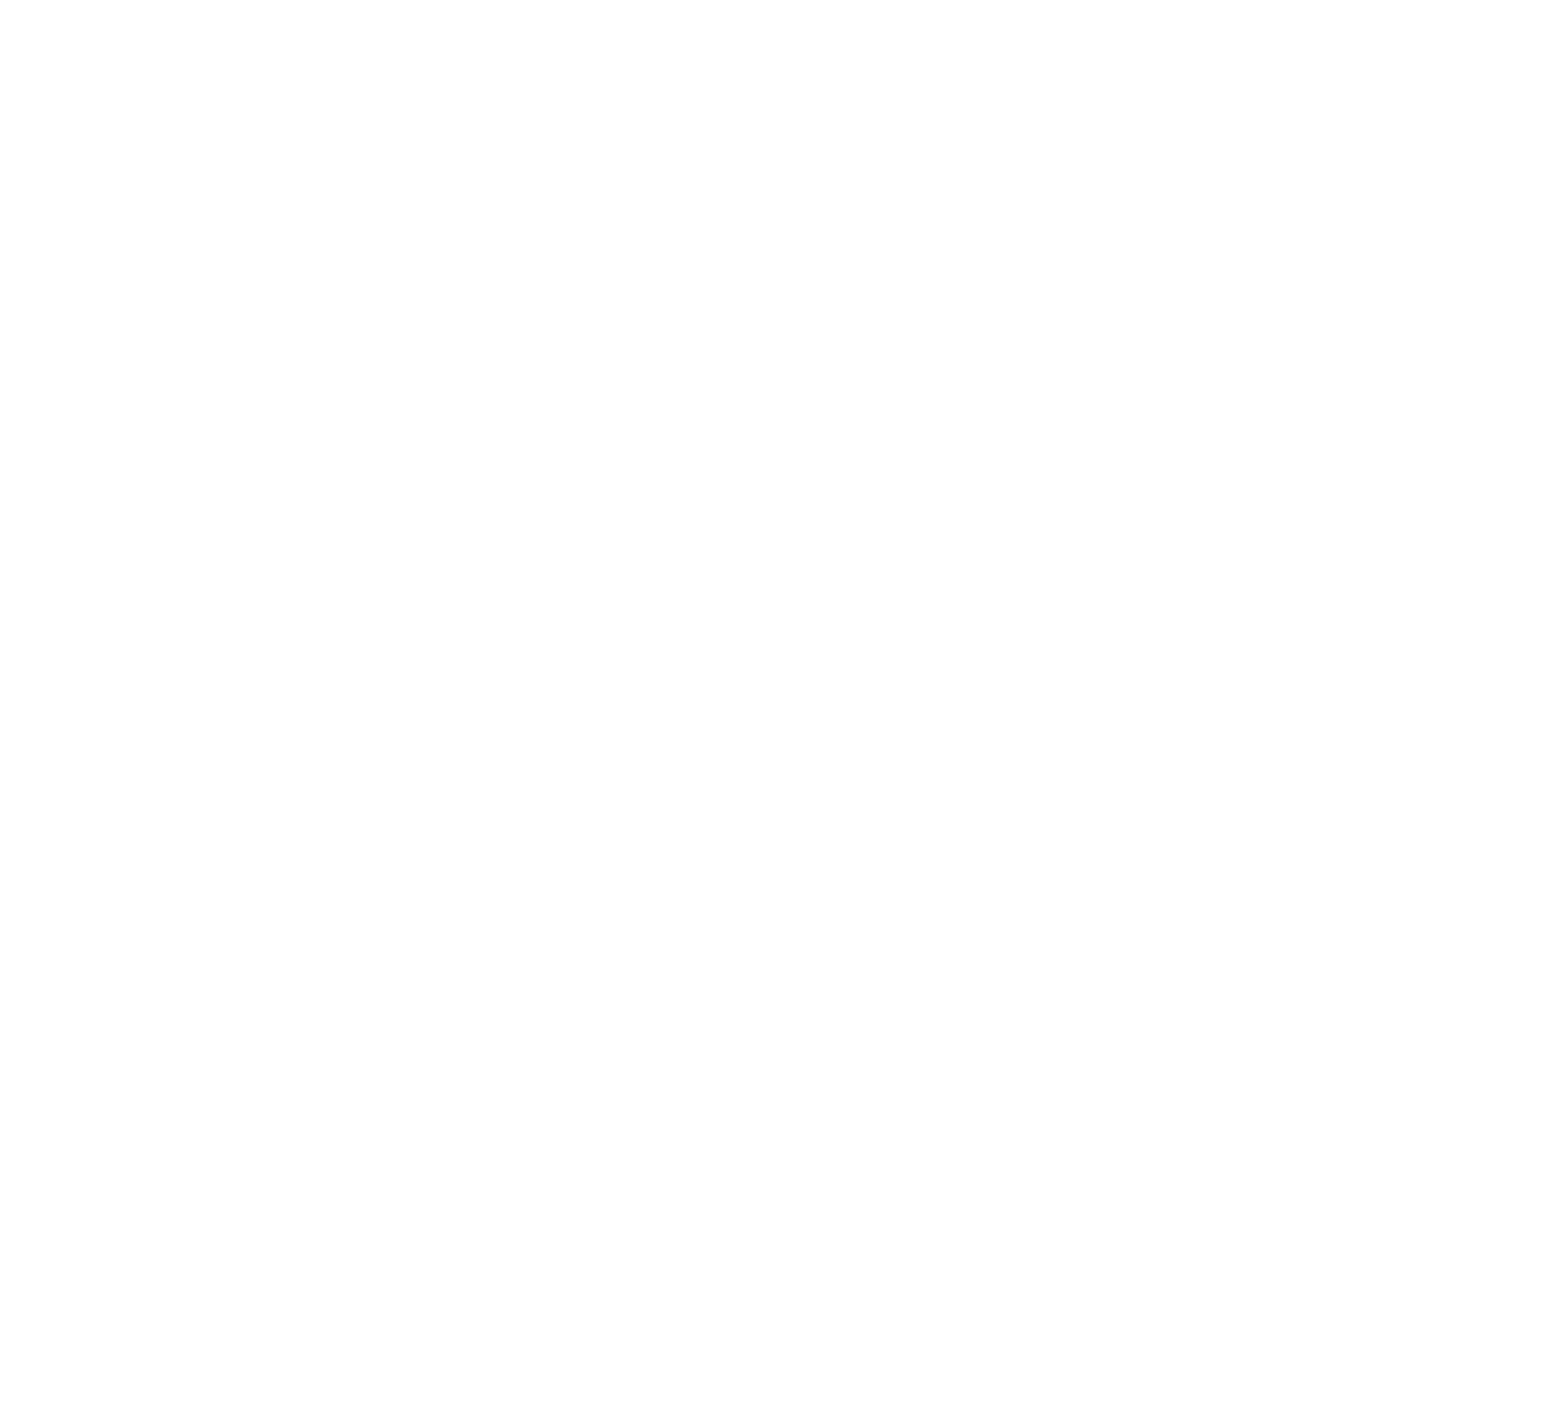 BTG Pactual logo pour fonds sombres (PNG transparent)